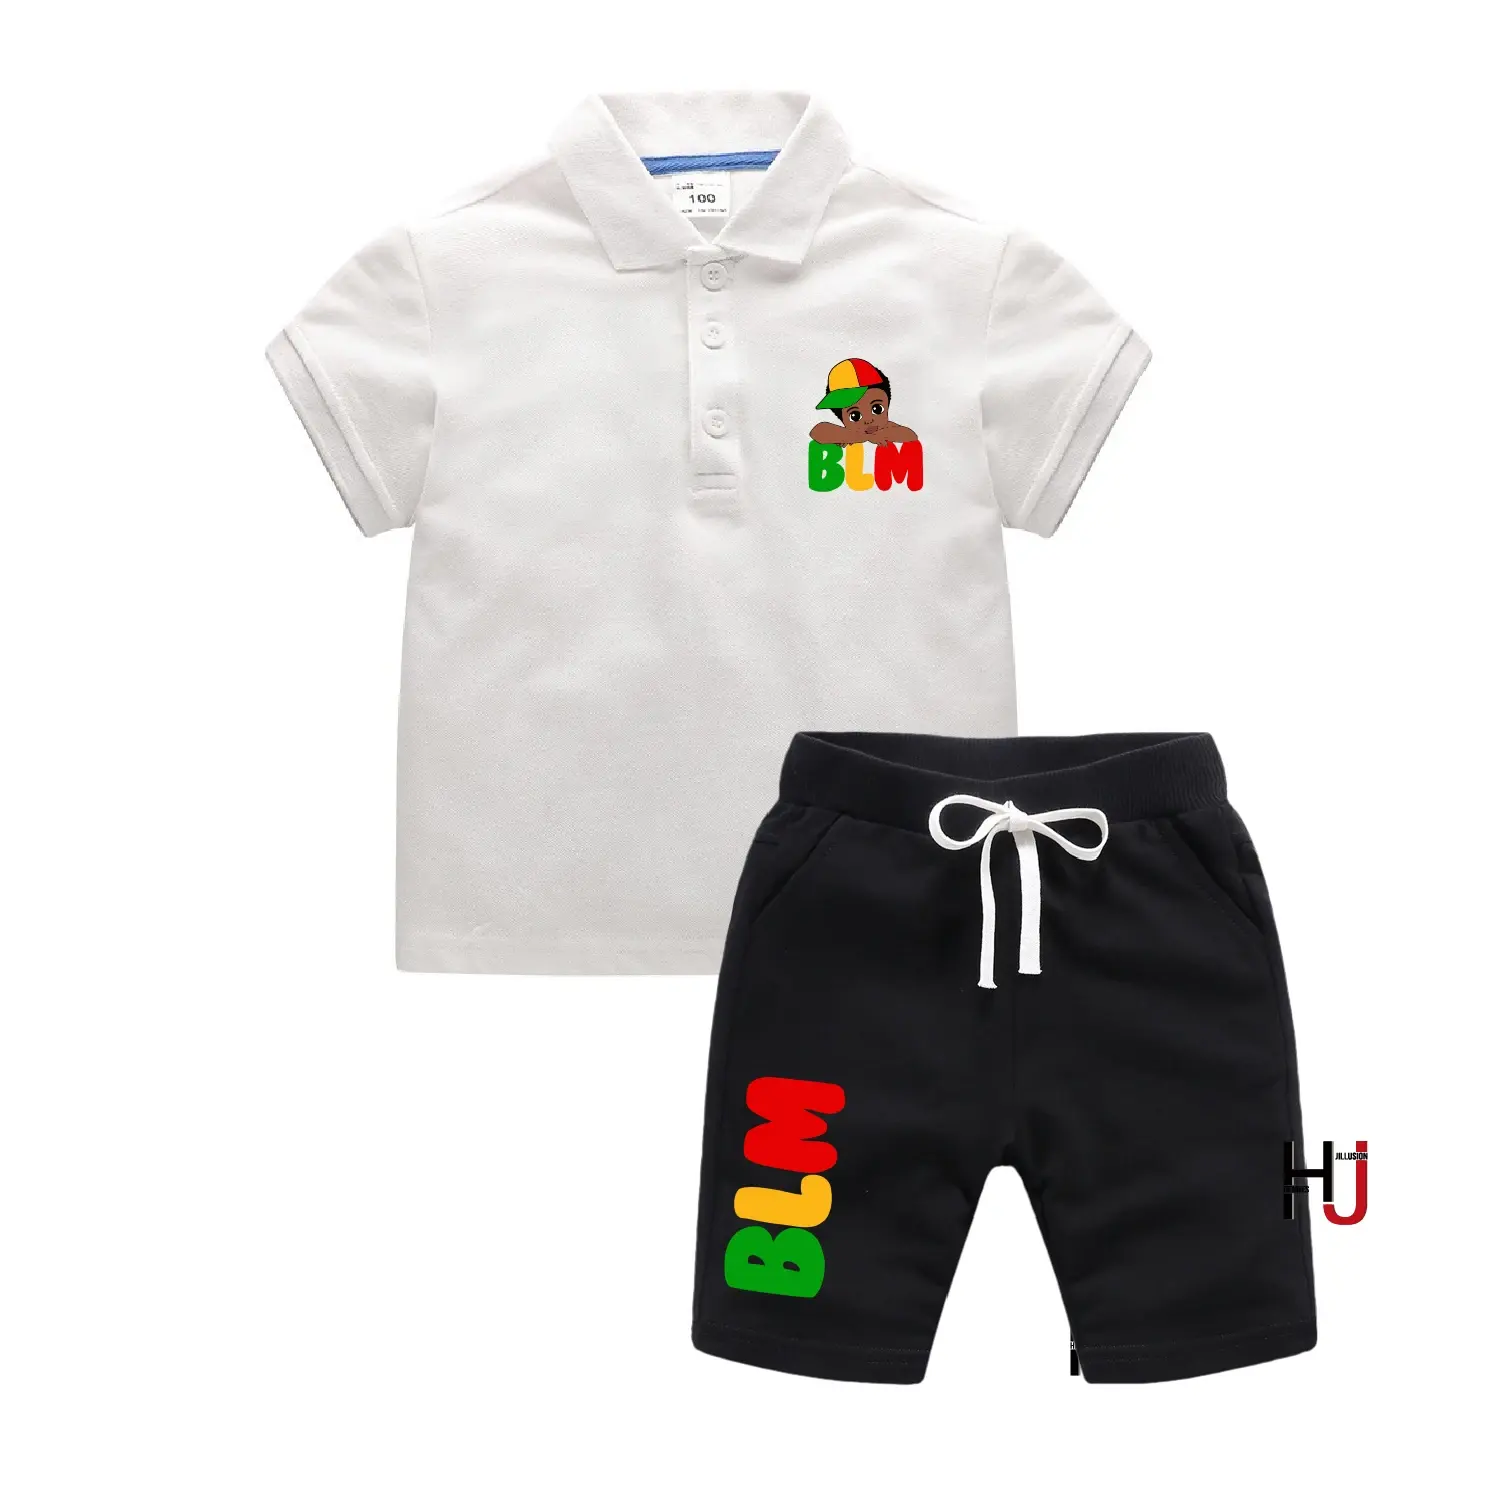 Nuovo piccolo sbirciante melanina ragazzi POLO t-shirt Set completo abbigliamento per bambini vita nera materia magliette corte vestiti